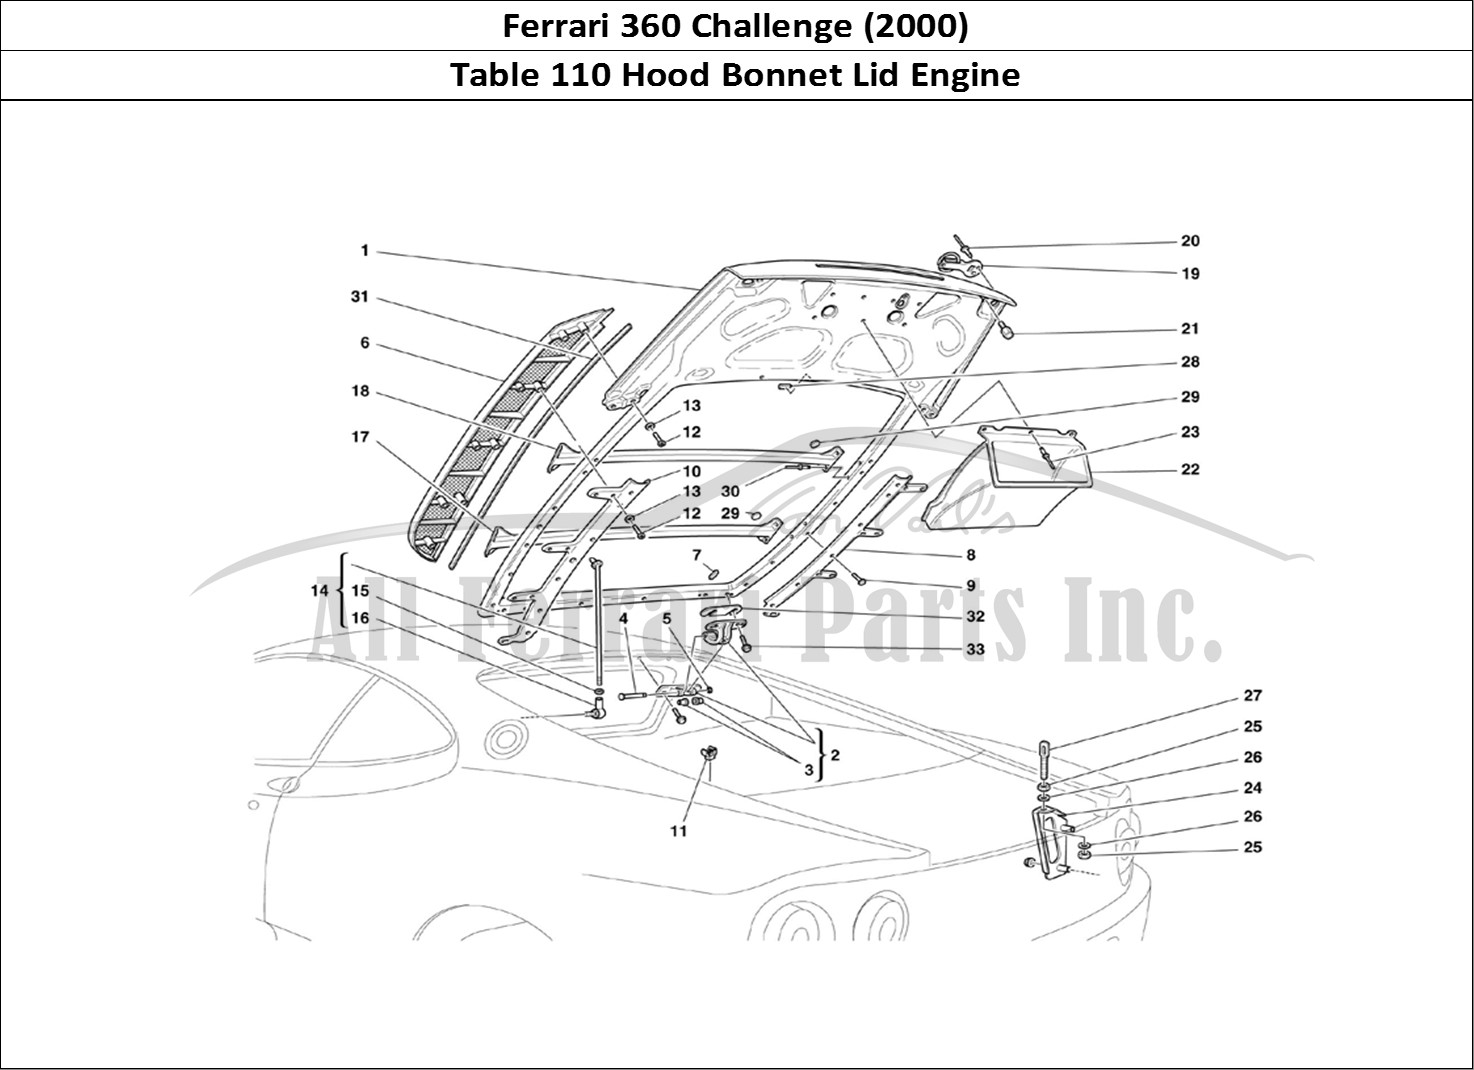 Ferrari Parts Ferrari 360 Challenge (2000) Page 110 Engine Bonnet